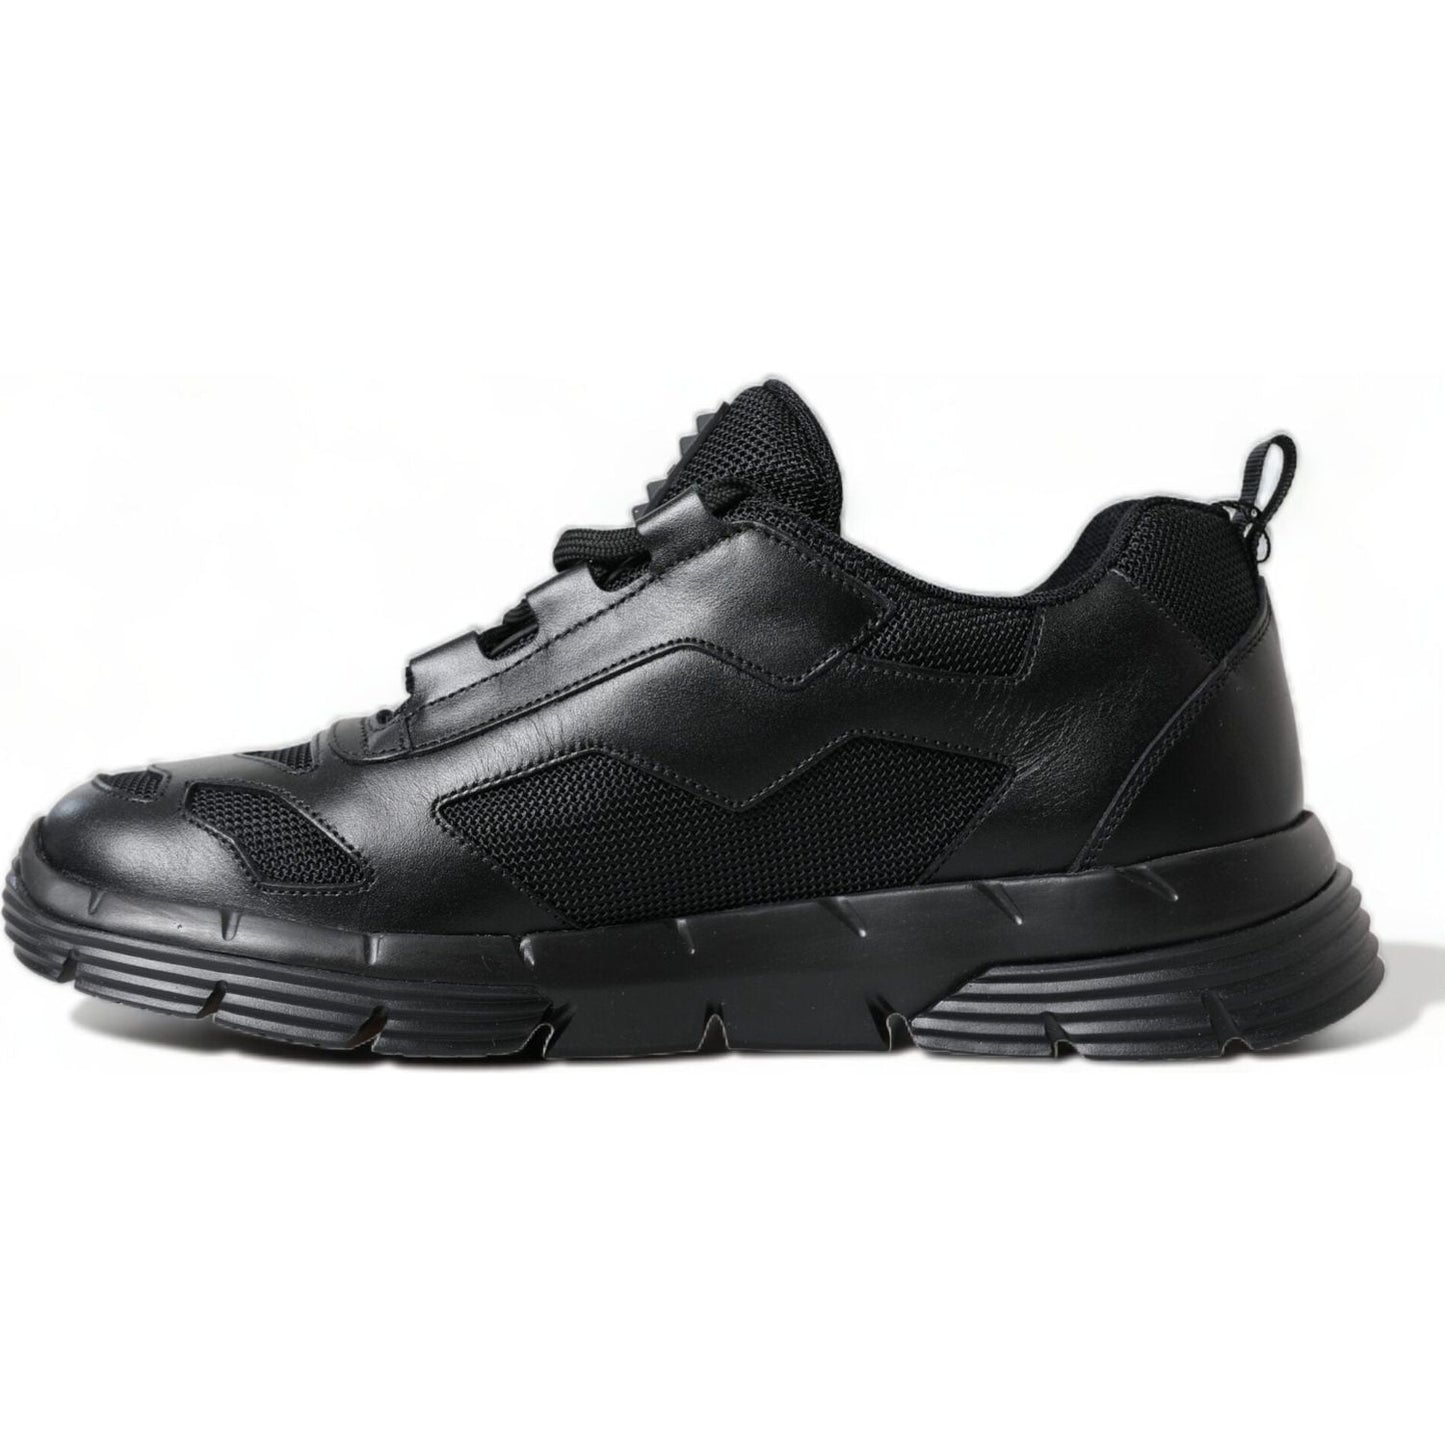 Prada Sleek Low Top Leather Sneakers in Timeless Black black-mesh-panel-low-top-twist-trainers-sneakers-shoes